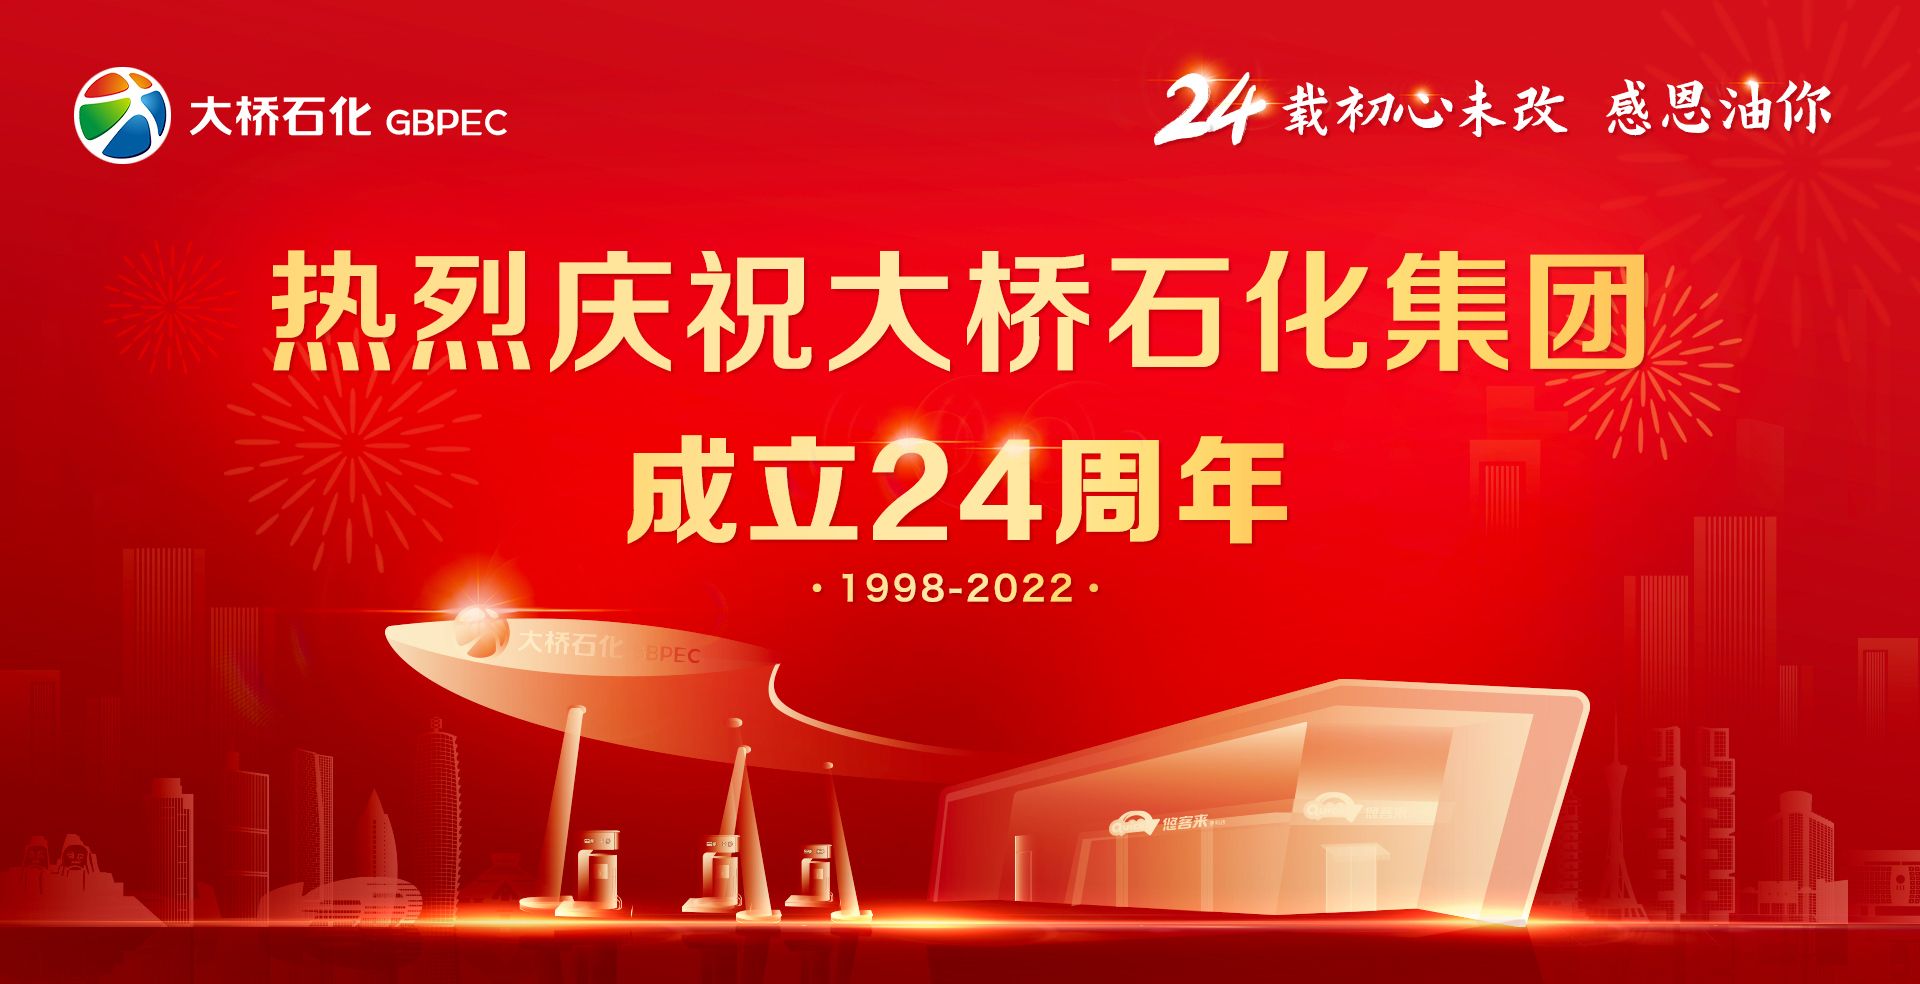 热烈祝贺大桥石化集团成立24周年